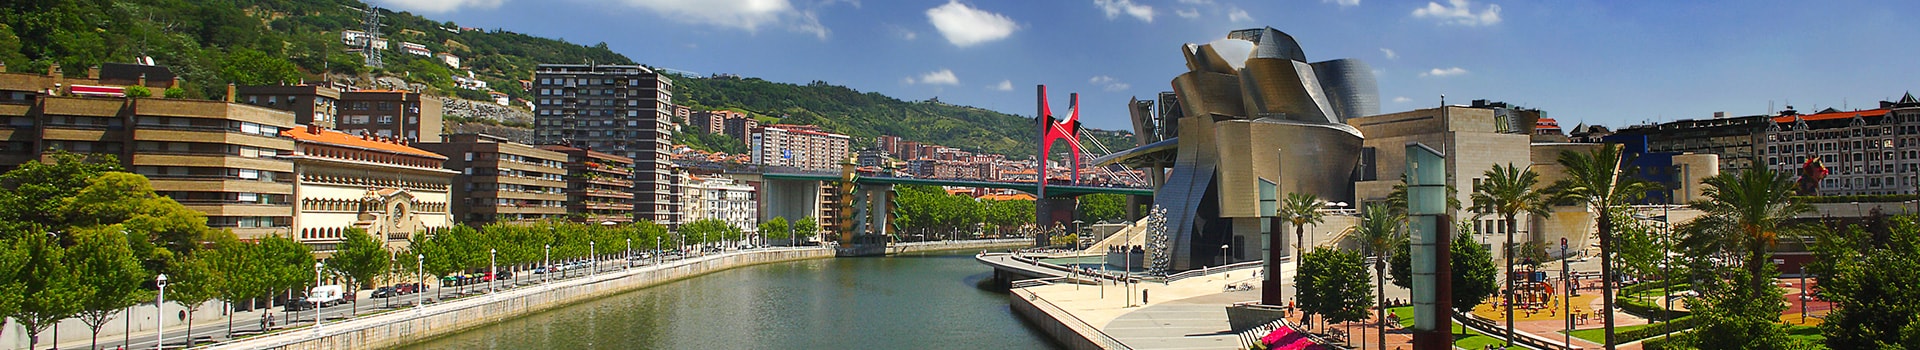 Almeria - Bilbao